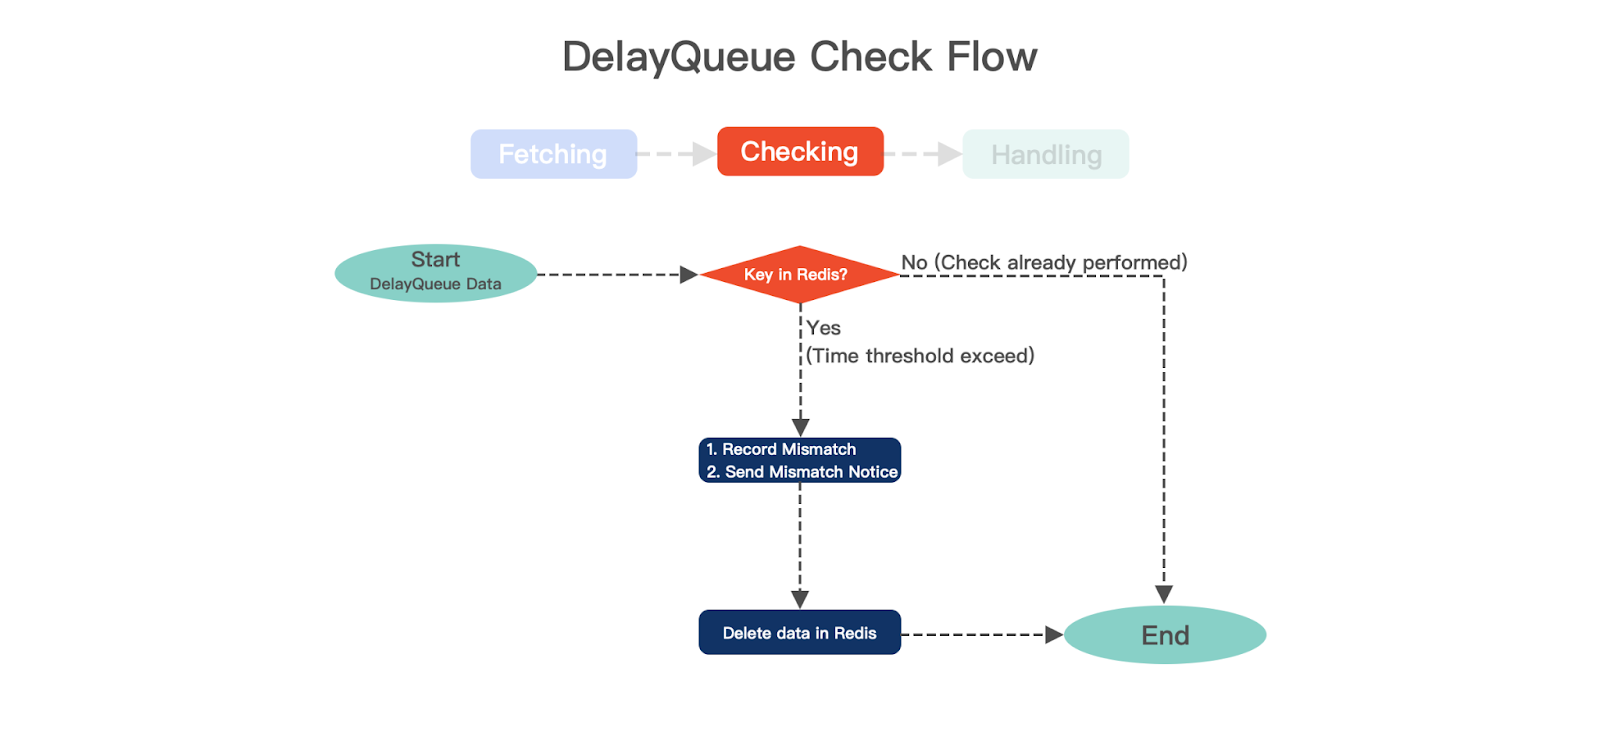 Fig9. DelayQueue Check Flow